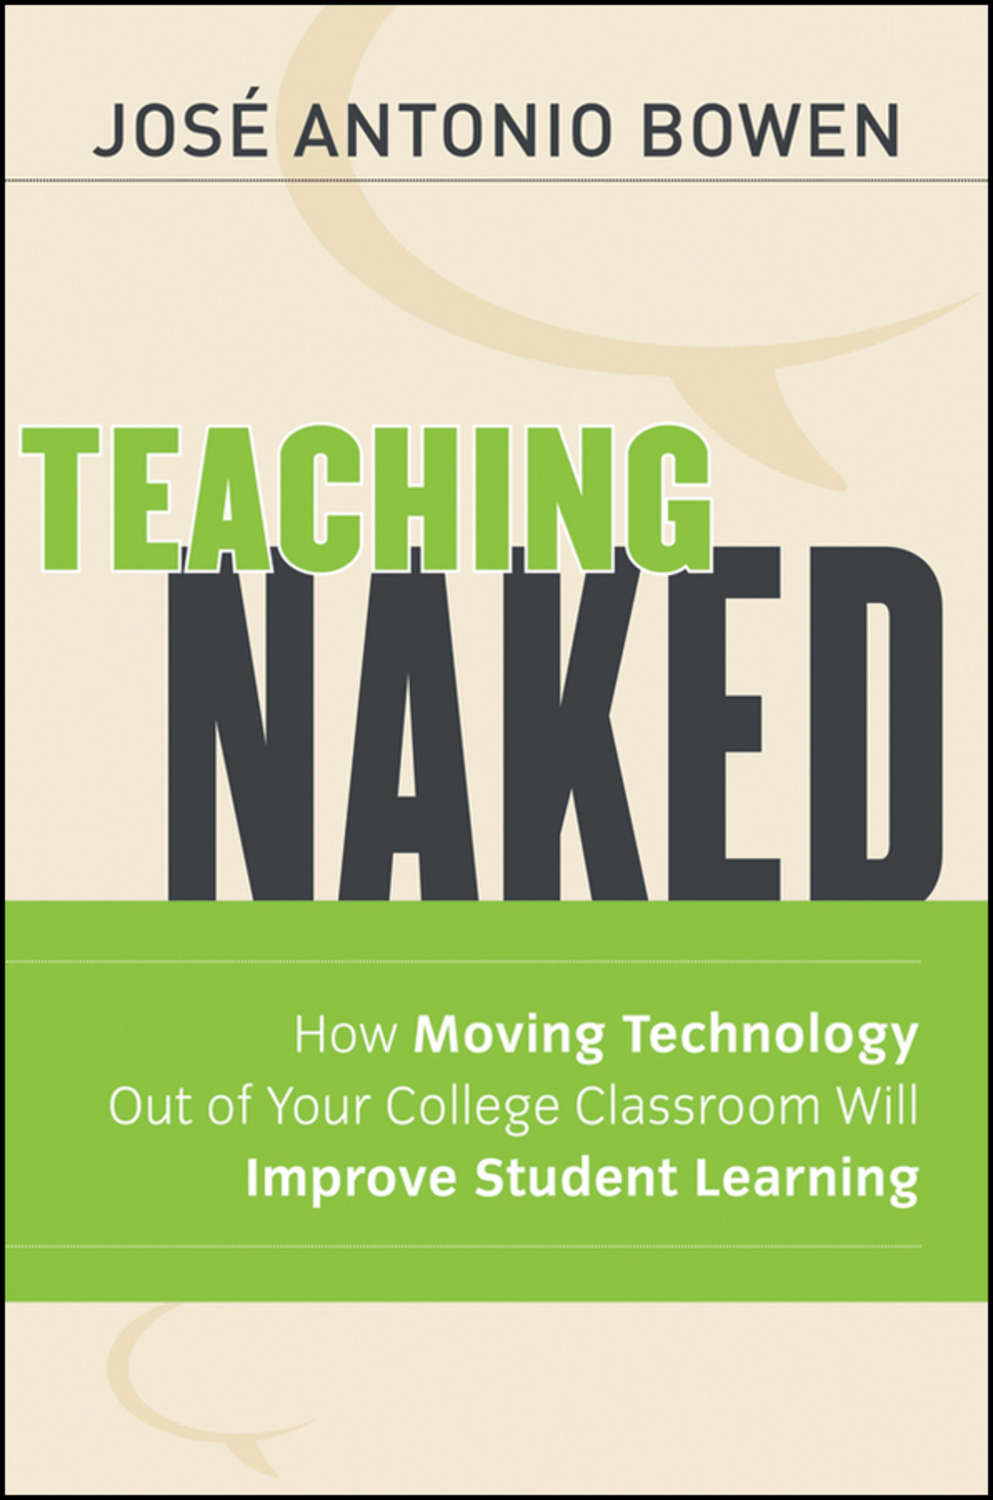 Teaching naked